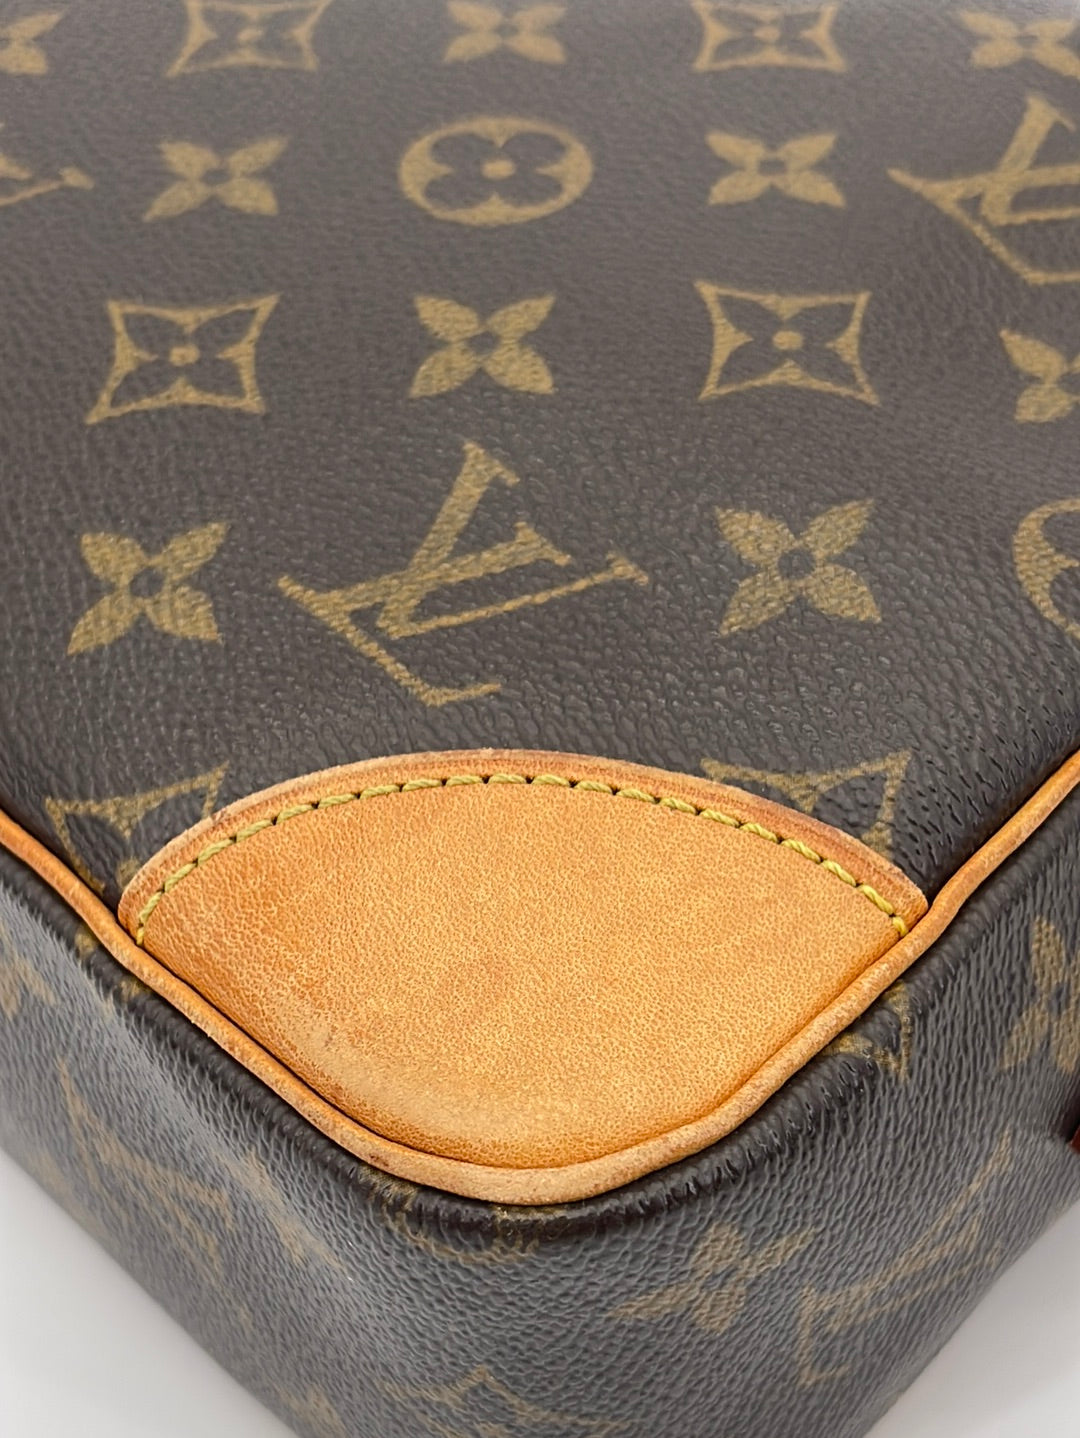 Louis Vuitton Trocadero 30 Shoulder Bag Used (6187)